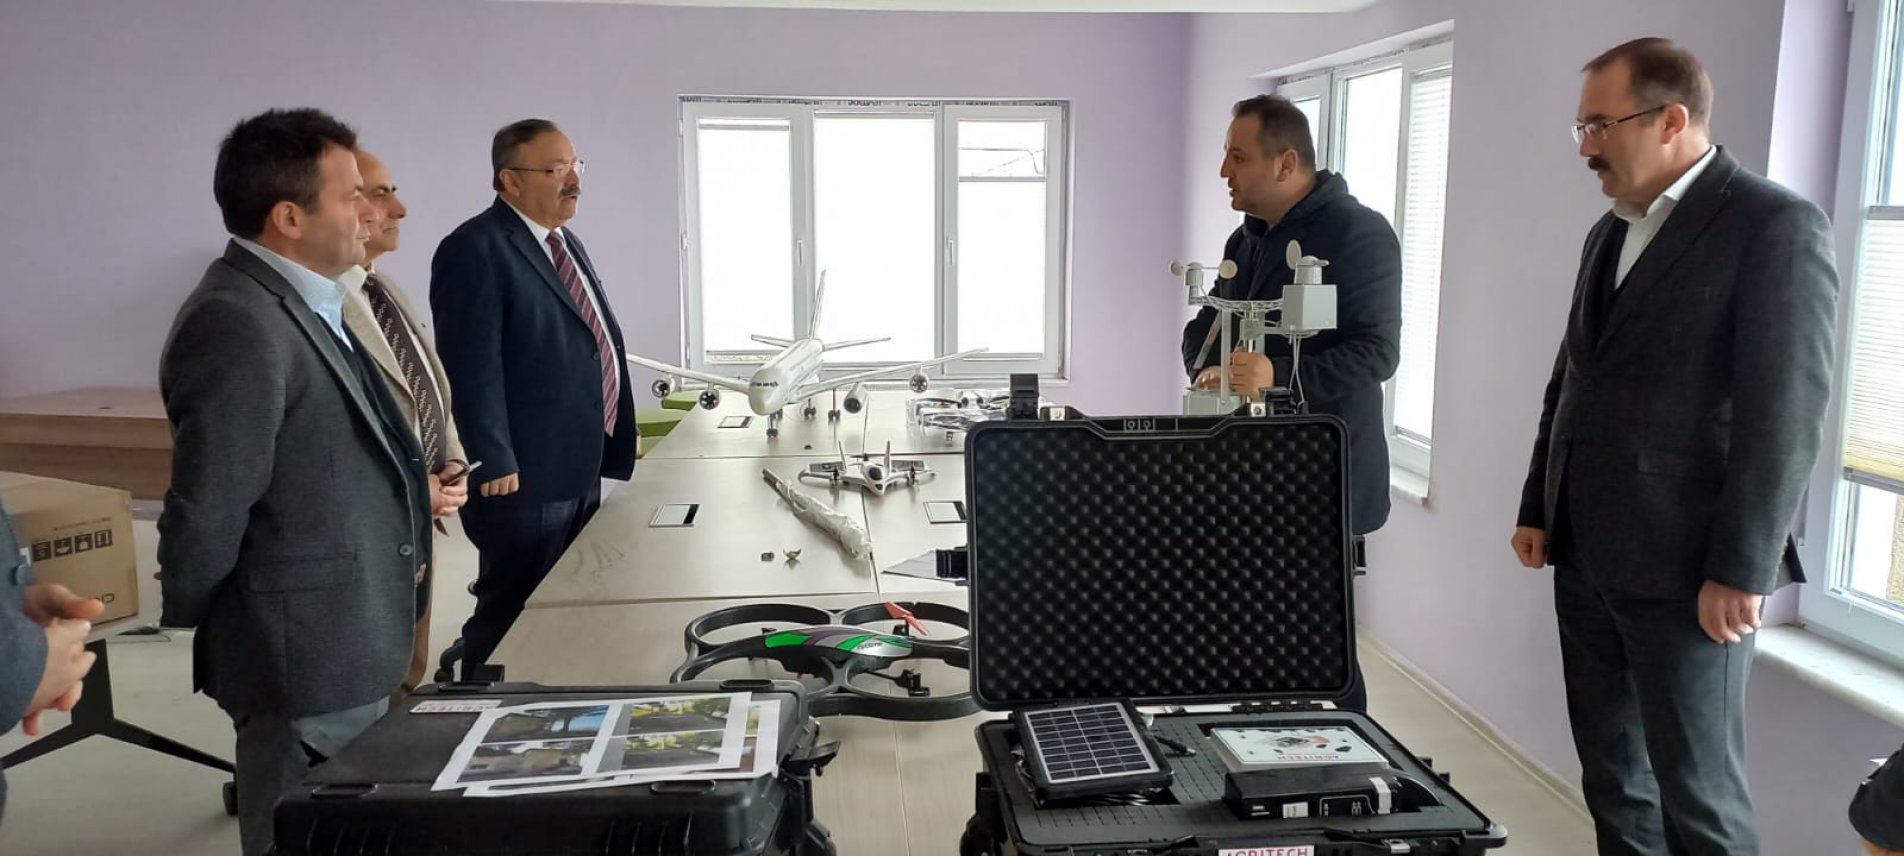 Müdür Tosunoğlu, Saraçlı İnovasyon Merkezinde İncelemelerde Bulundu